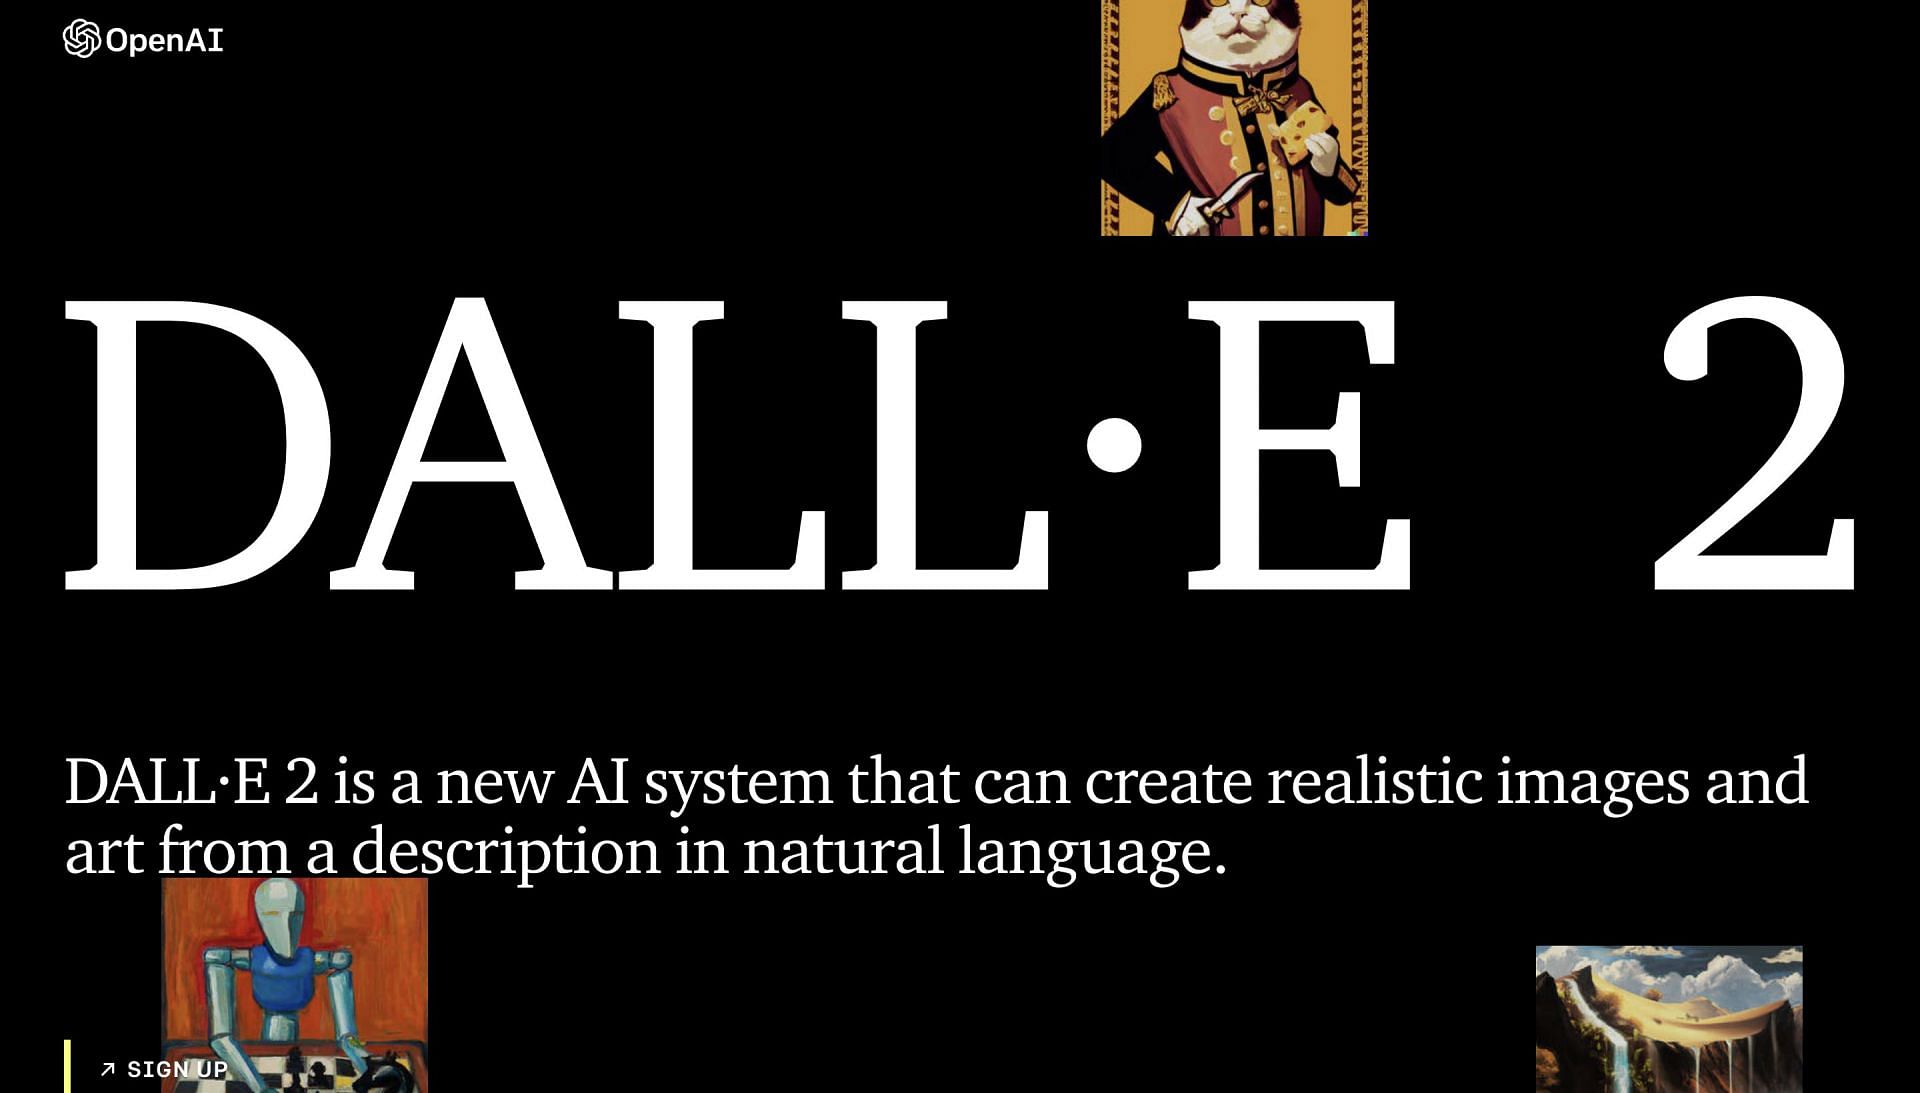 How to create AI art using DALL-E